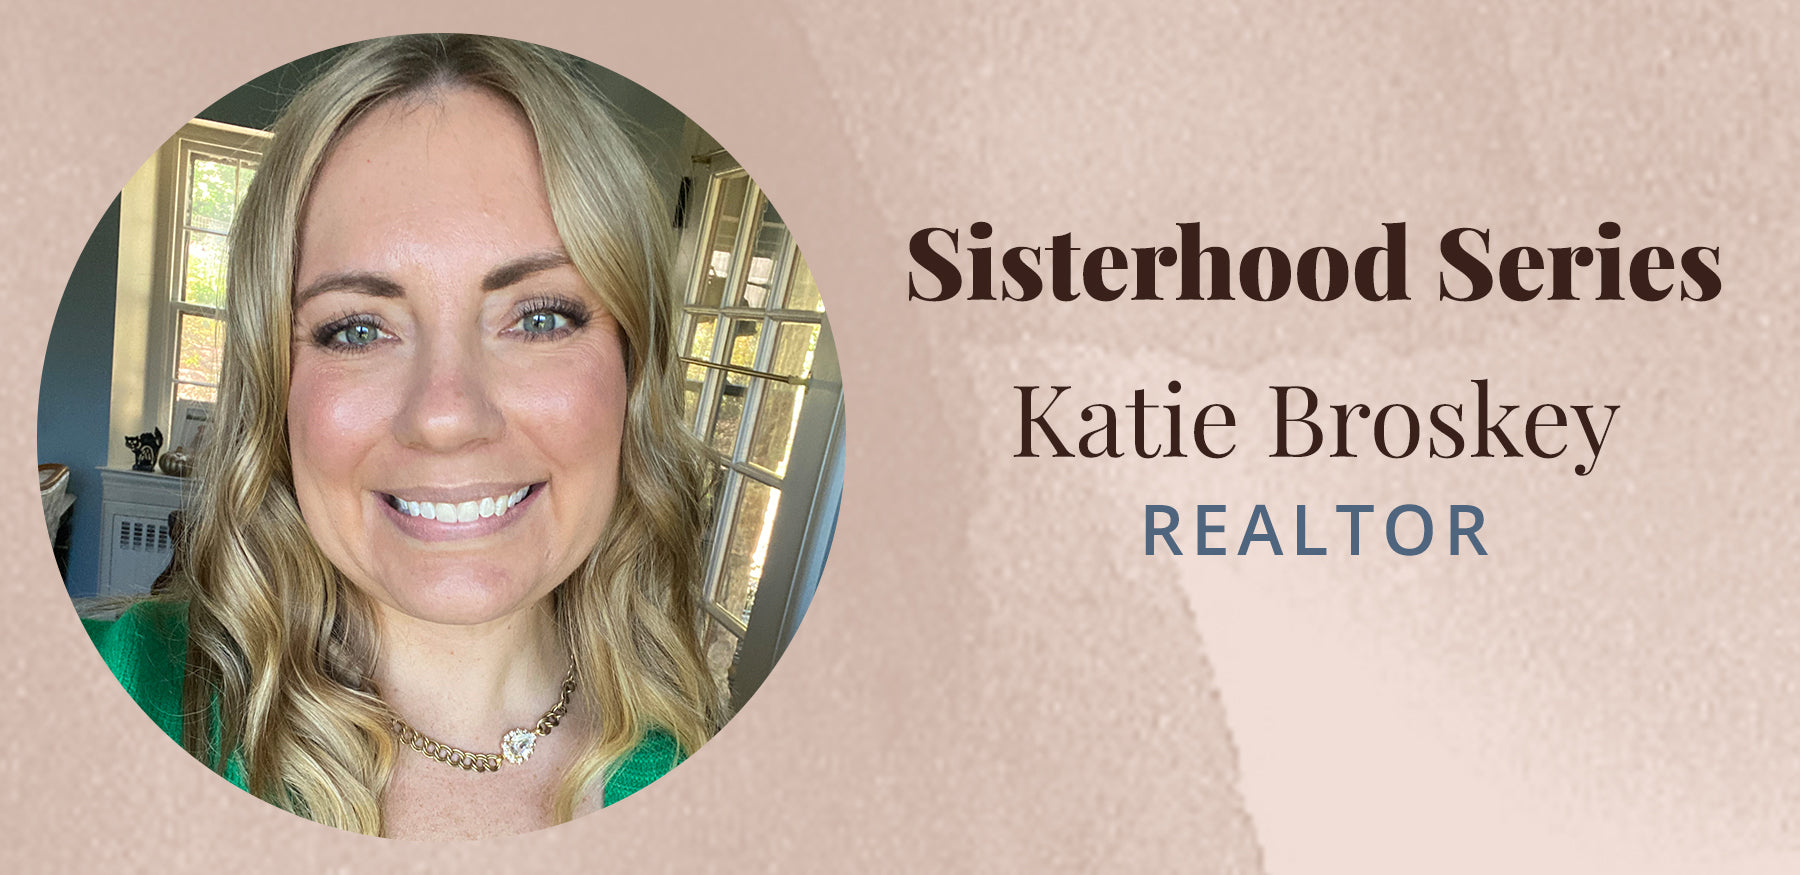 Sisterhood Series with Katie Broskey